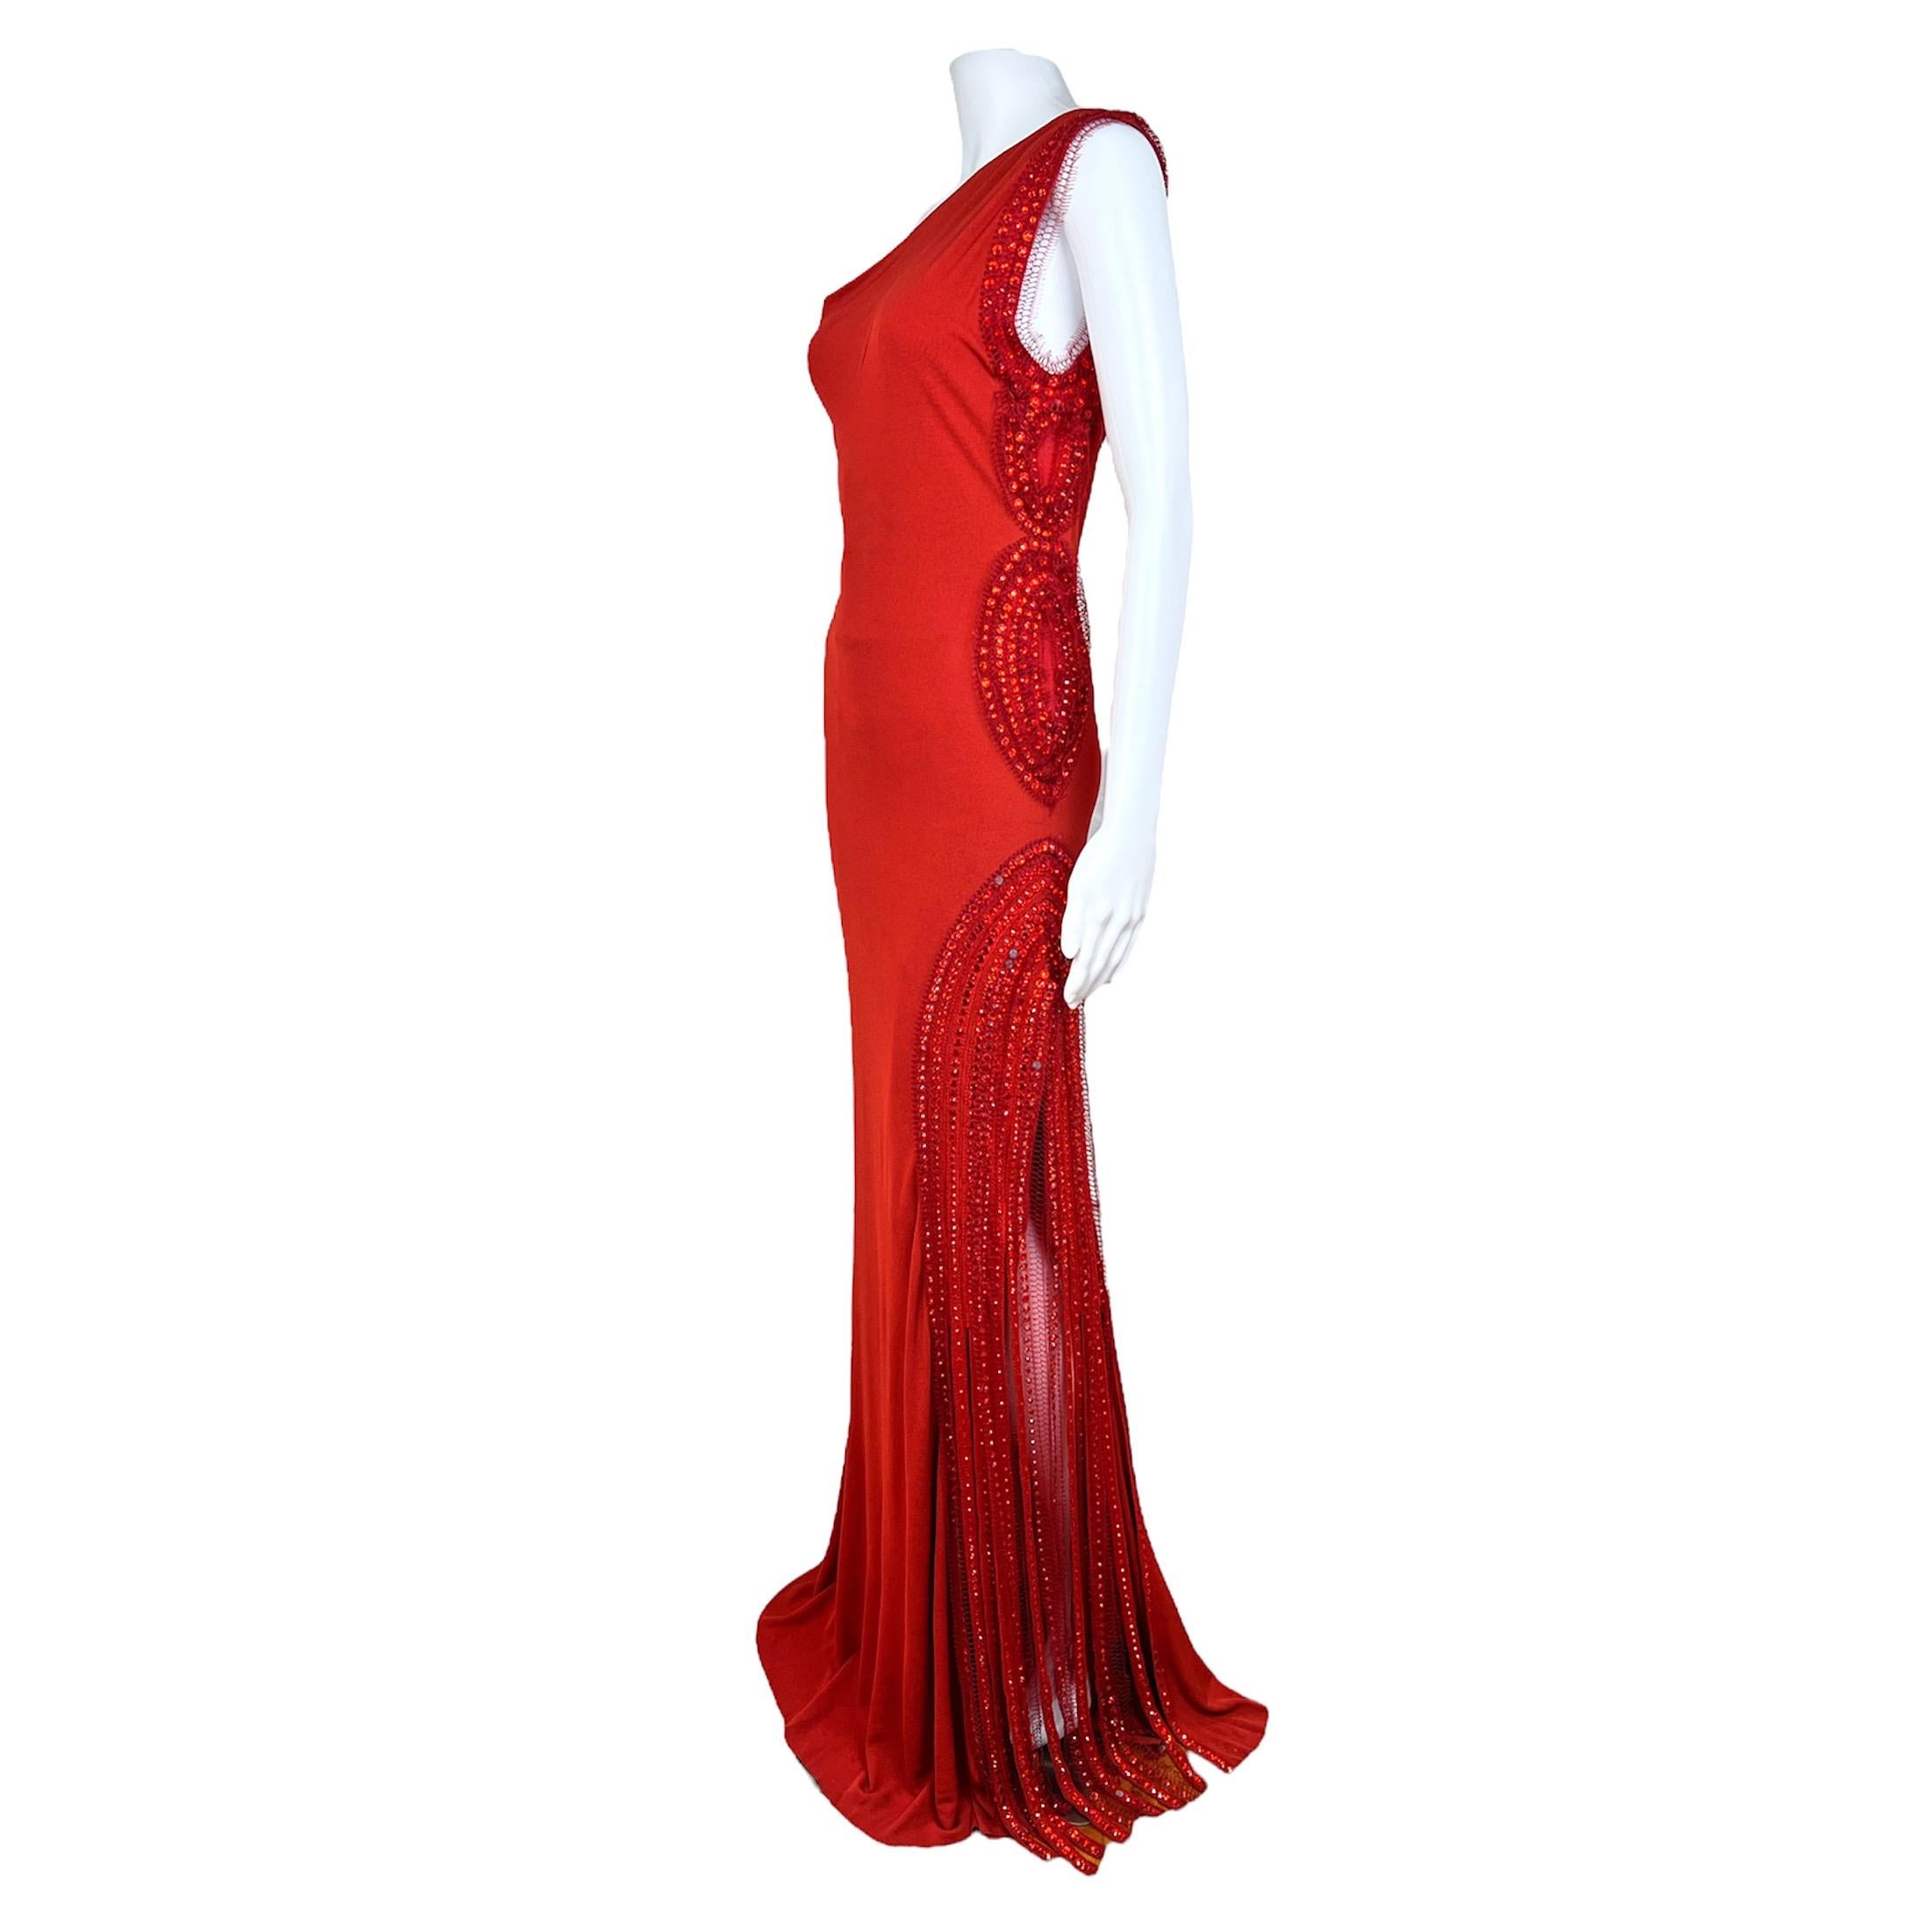 Magnifique robe vintage Jean-Paul Gaultier rouge à une épaule avec fente datant des années 2000. La robe est faite de soie et de maille et comporte des applications de perles et des franges sur le côté gauche du corps. La robe est entièrement